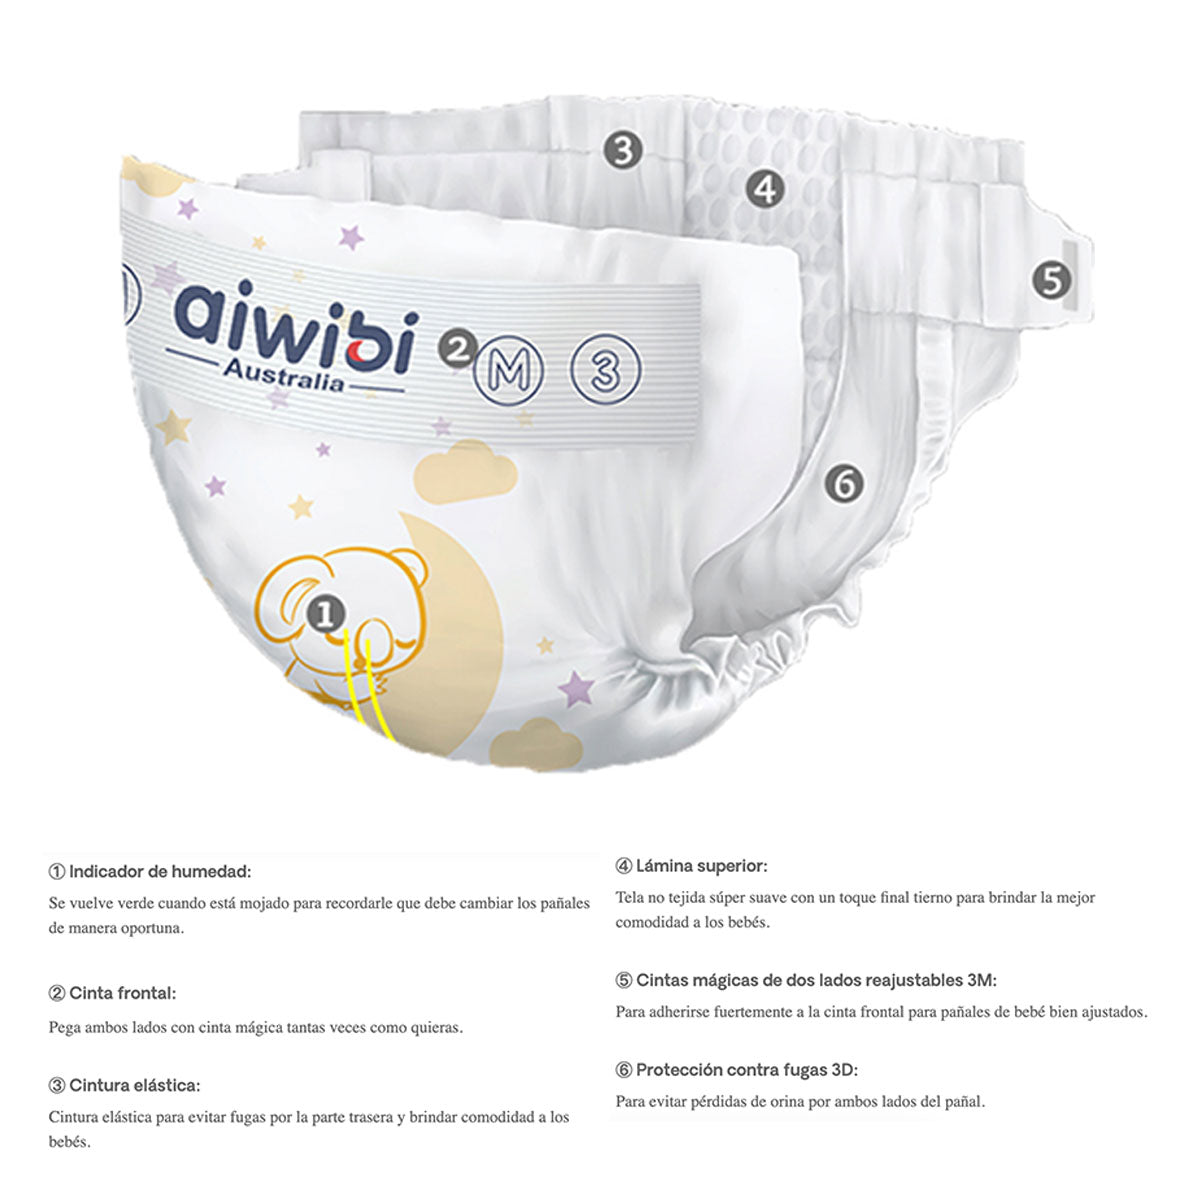 Pañales Aiwibi Premium Dulce Noche P (60 unidades) - 🇦🇺 Producto Australiano